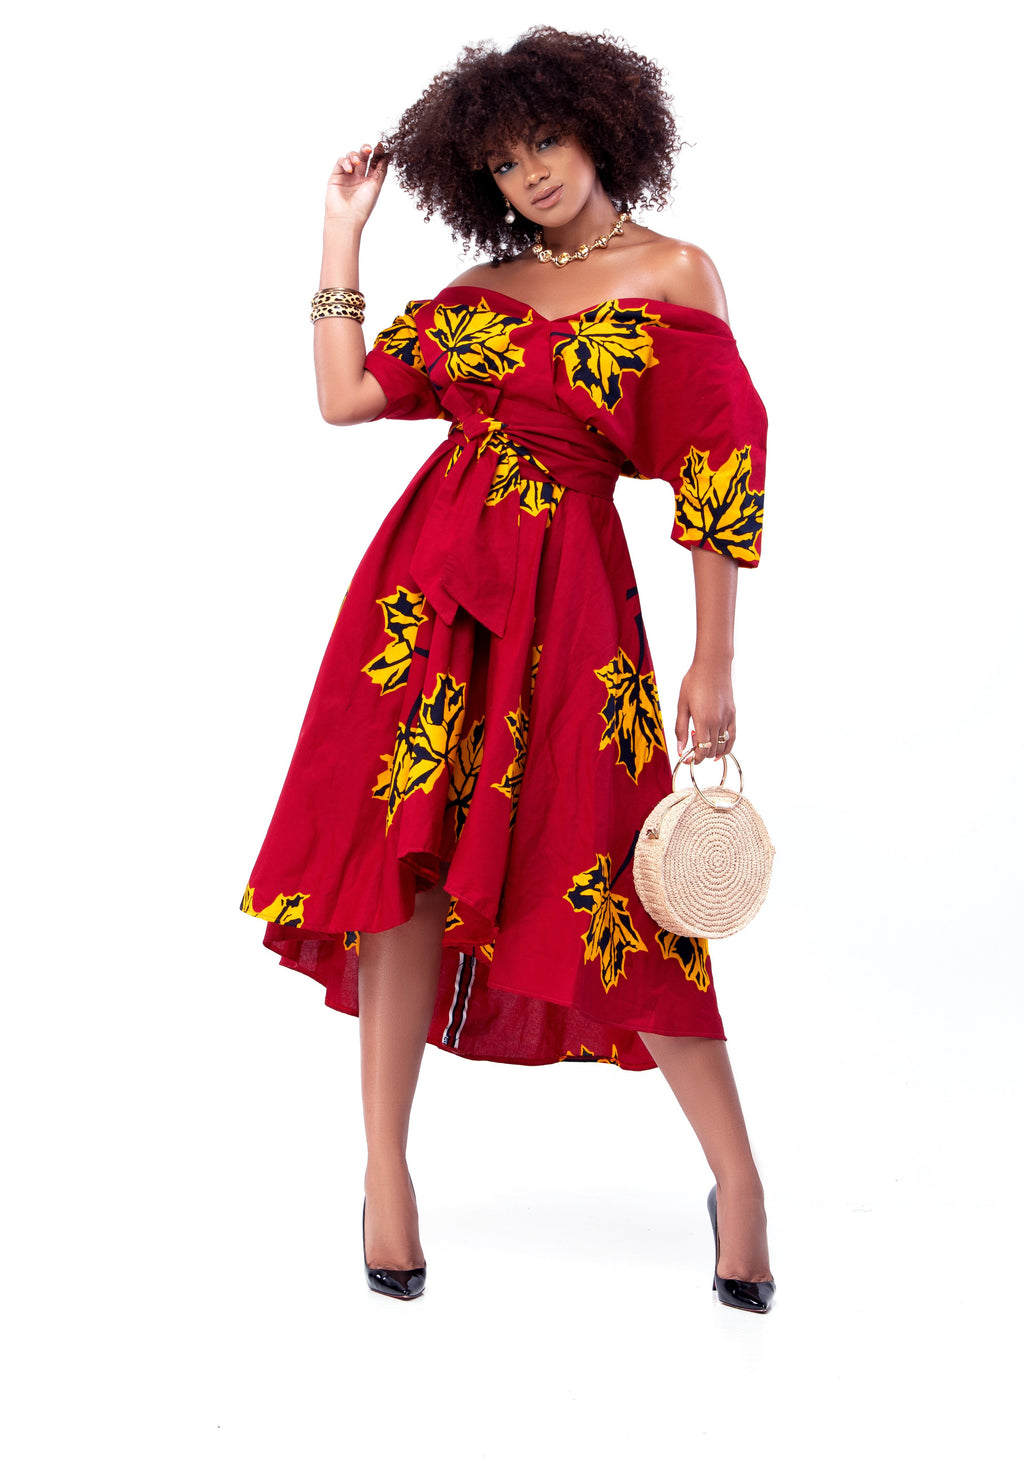 Africa dress